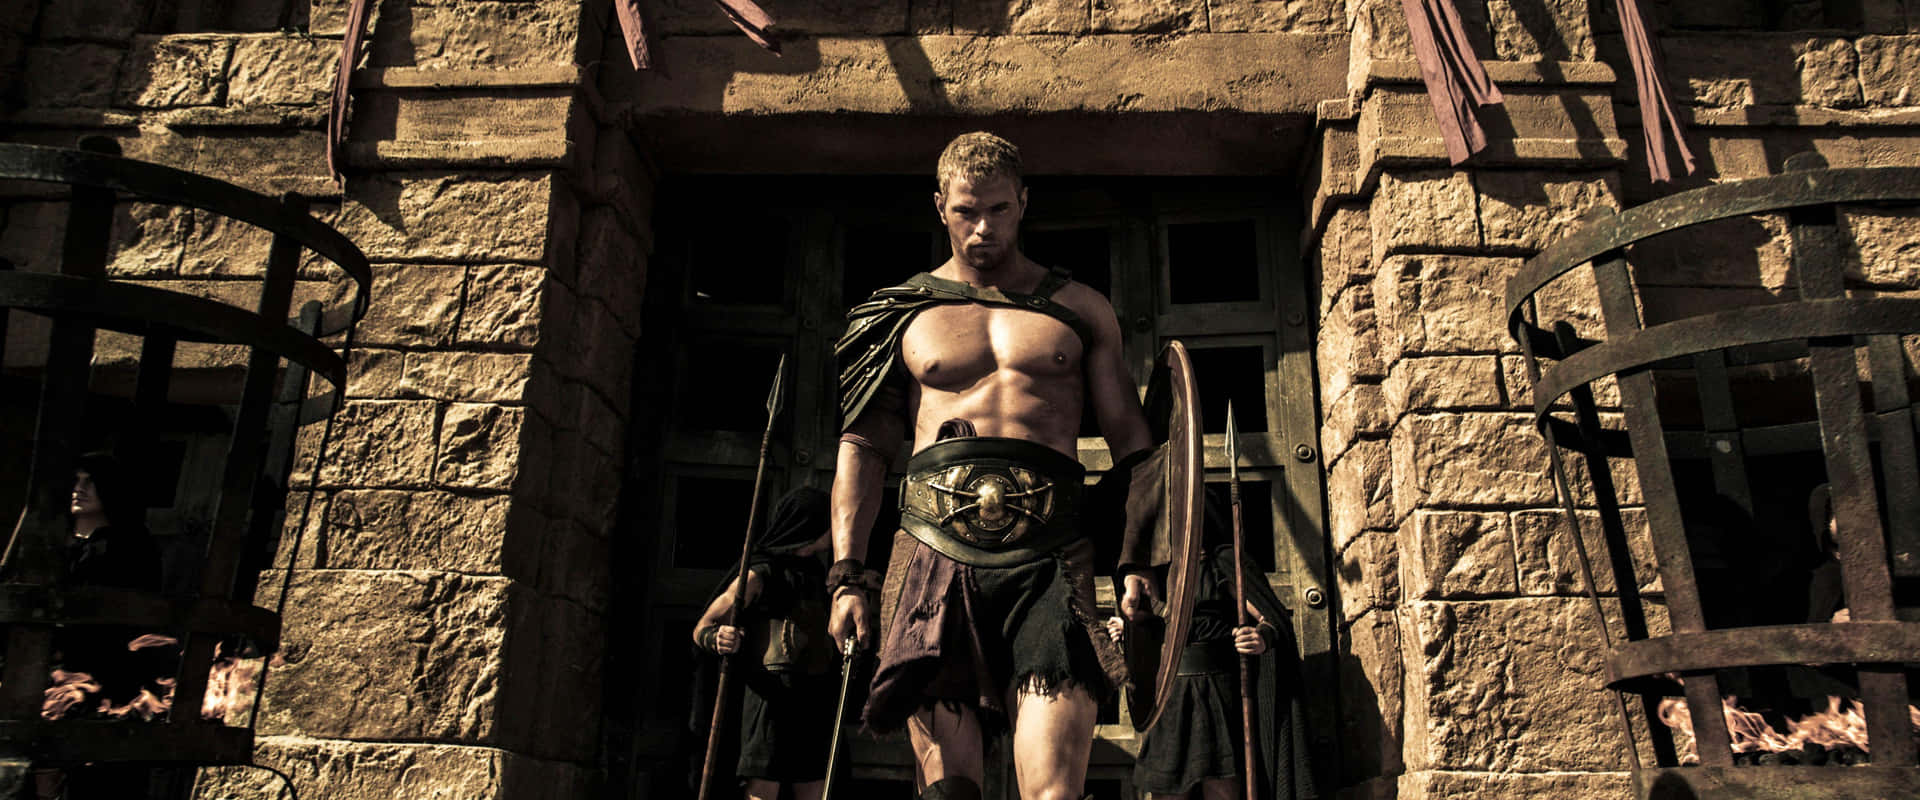 Einmann In Einer Spartanischen Kostümierung Steht Vor Einem Steinernen Gebäude.